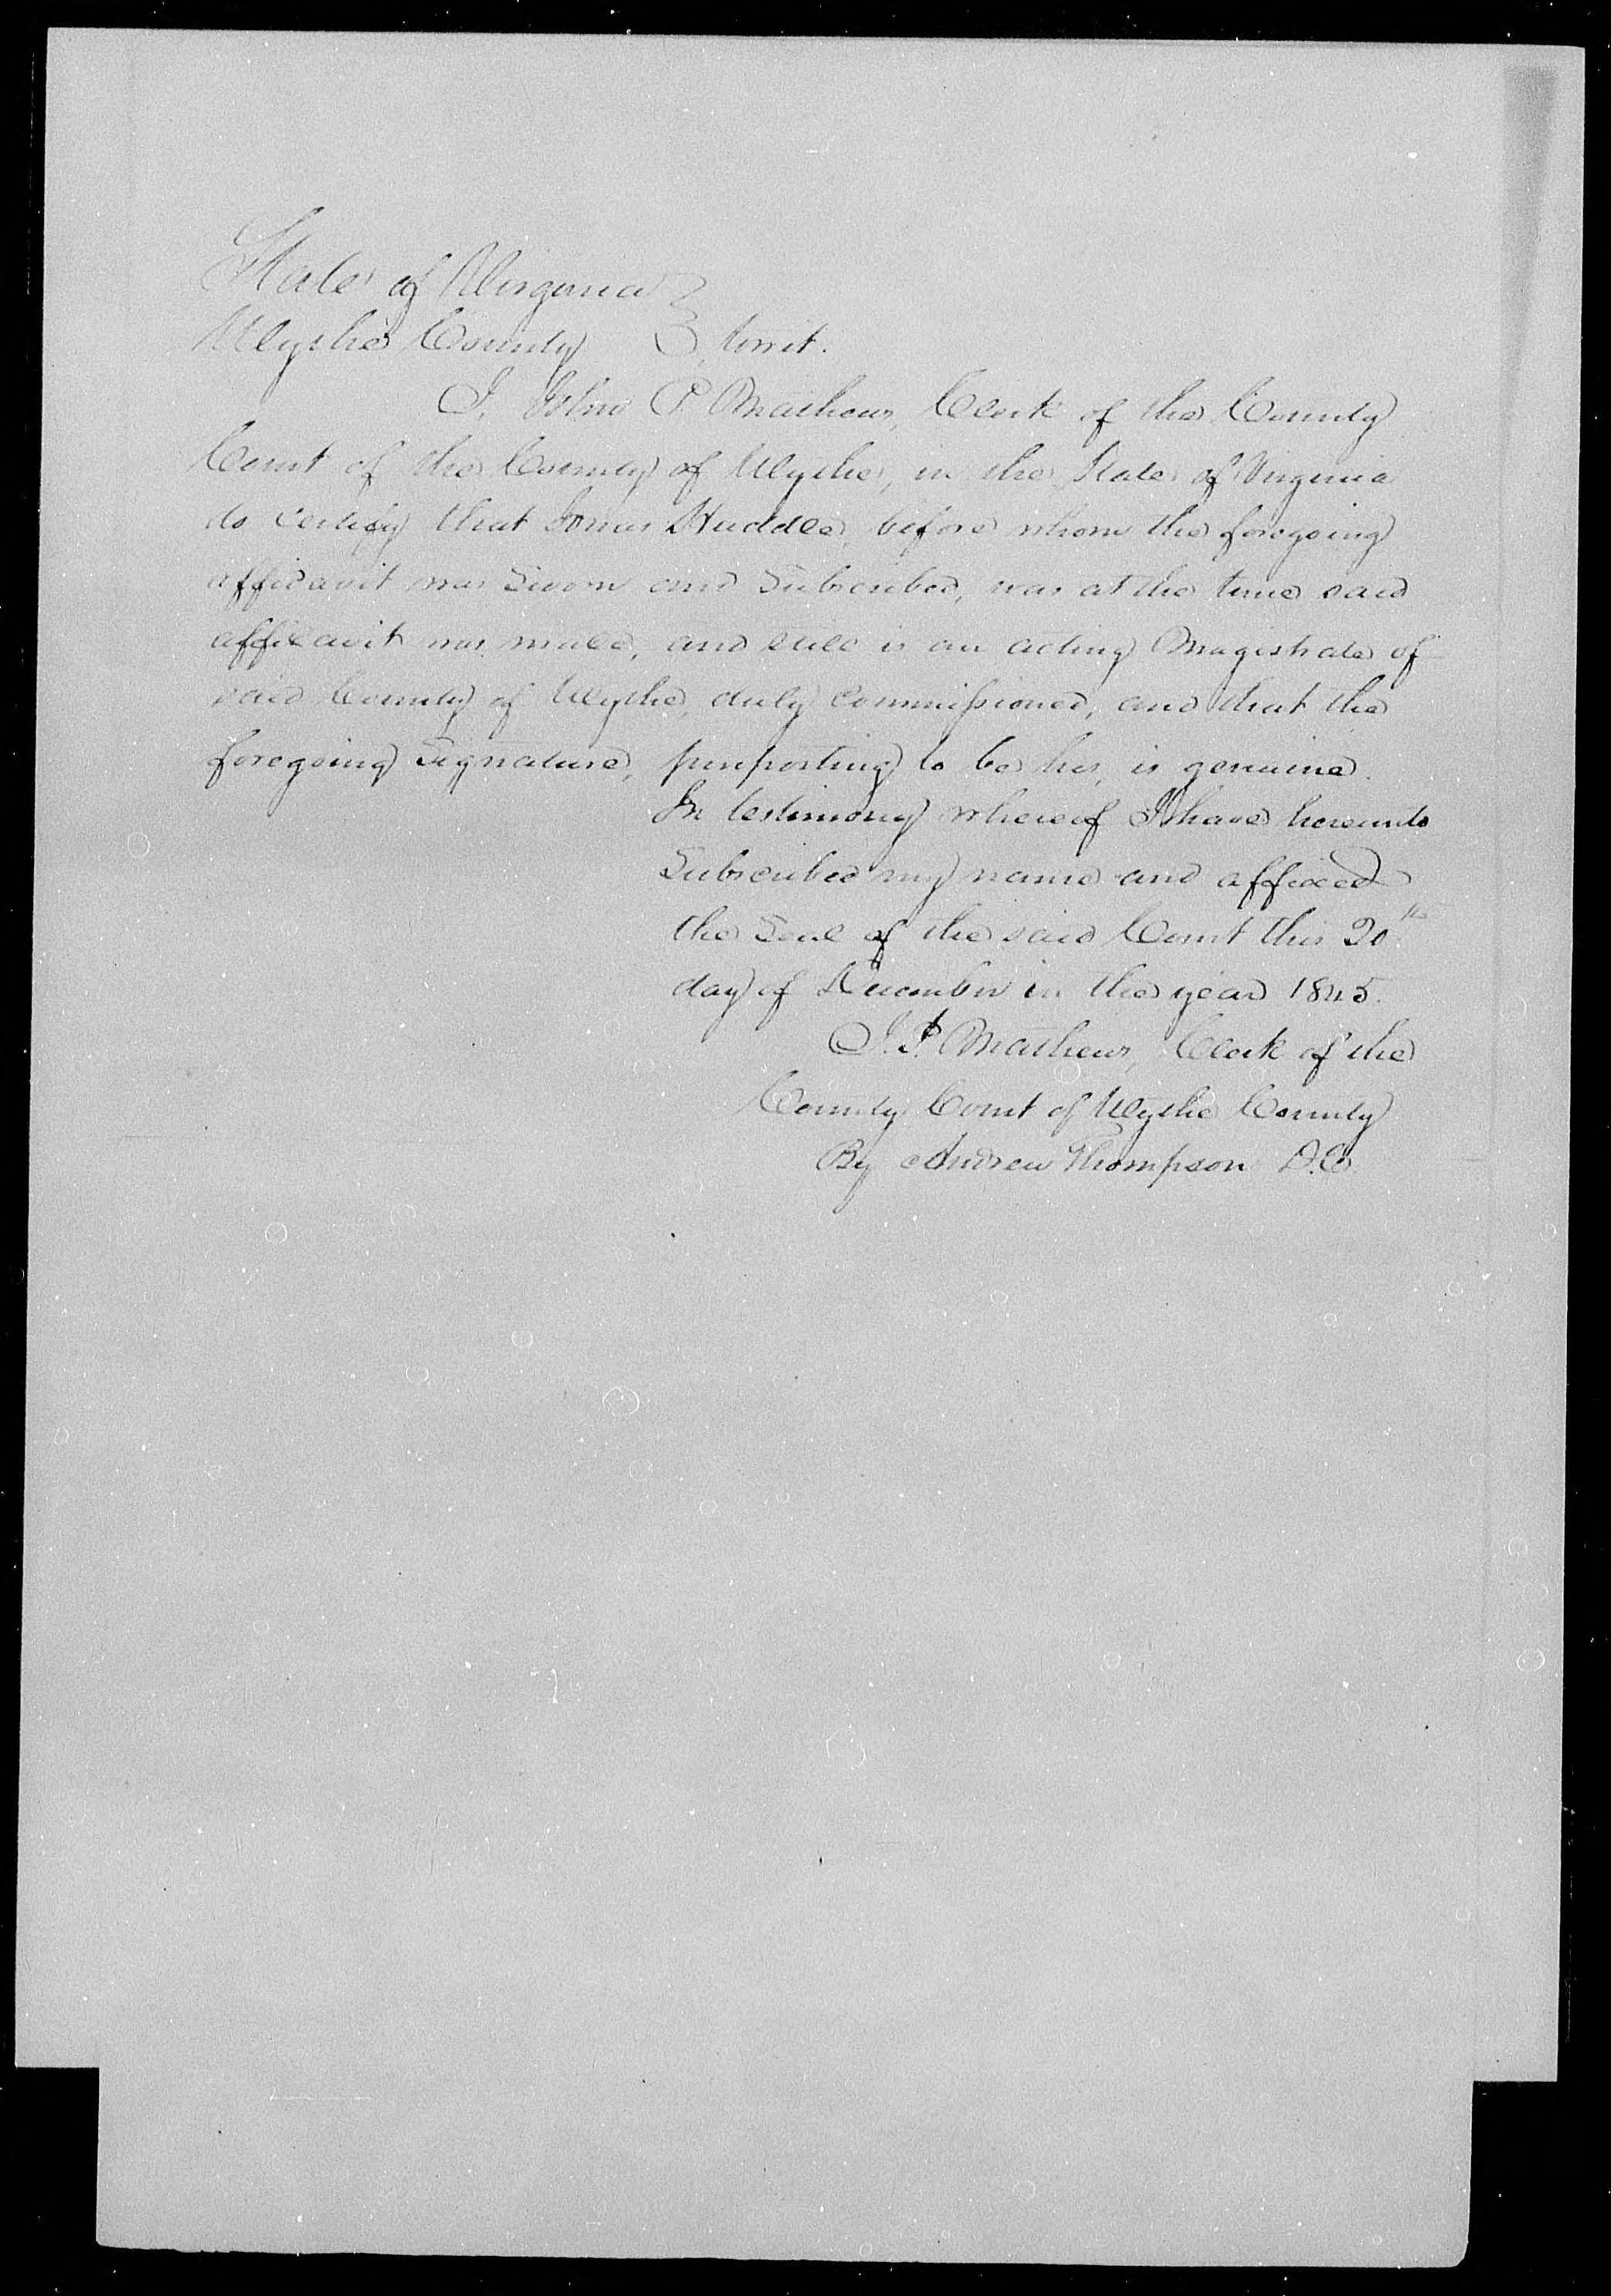 Affidavit of Elijah Hawkins about Margaret Kinder's death, 3 December 1845, page 2